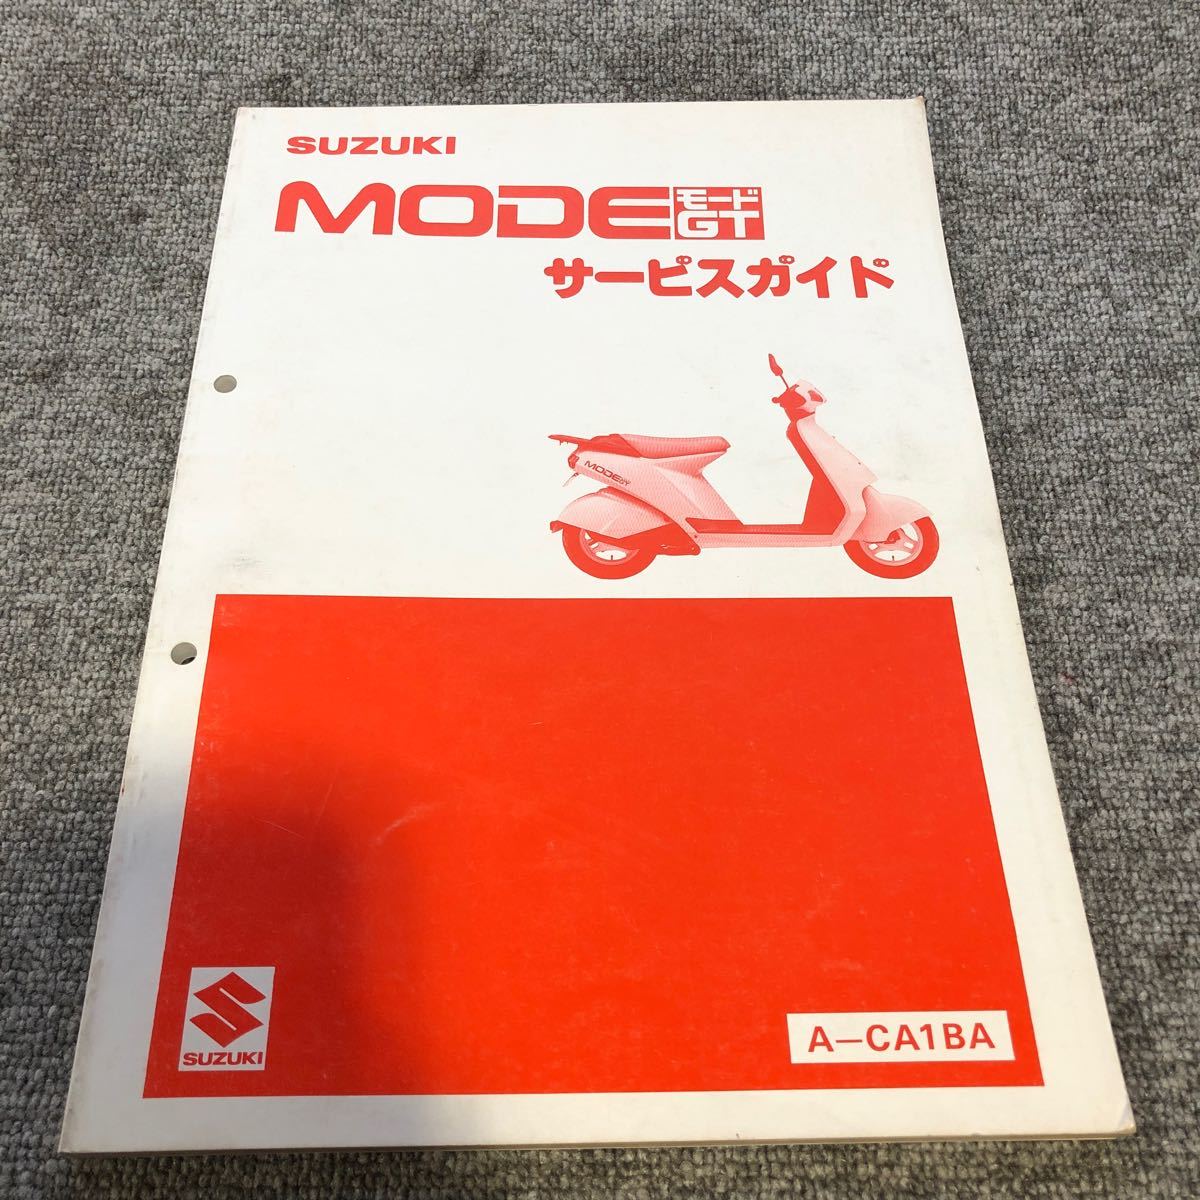 SUZUKI スズキ【MODE モードGT(A-CA1BA)】 サービスマニュアル_画像1